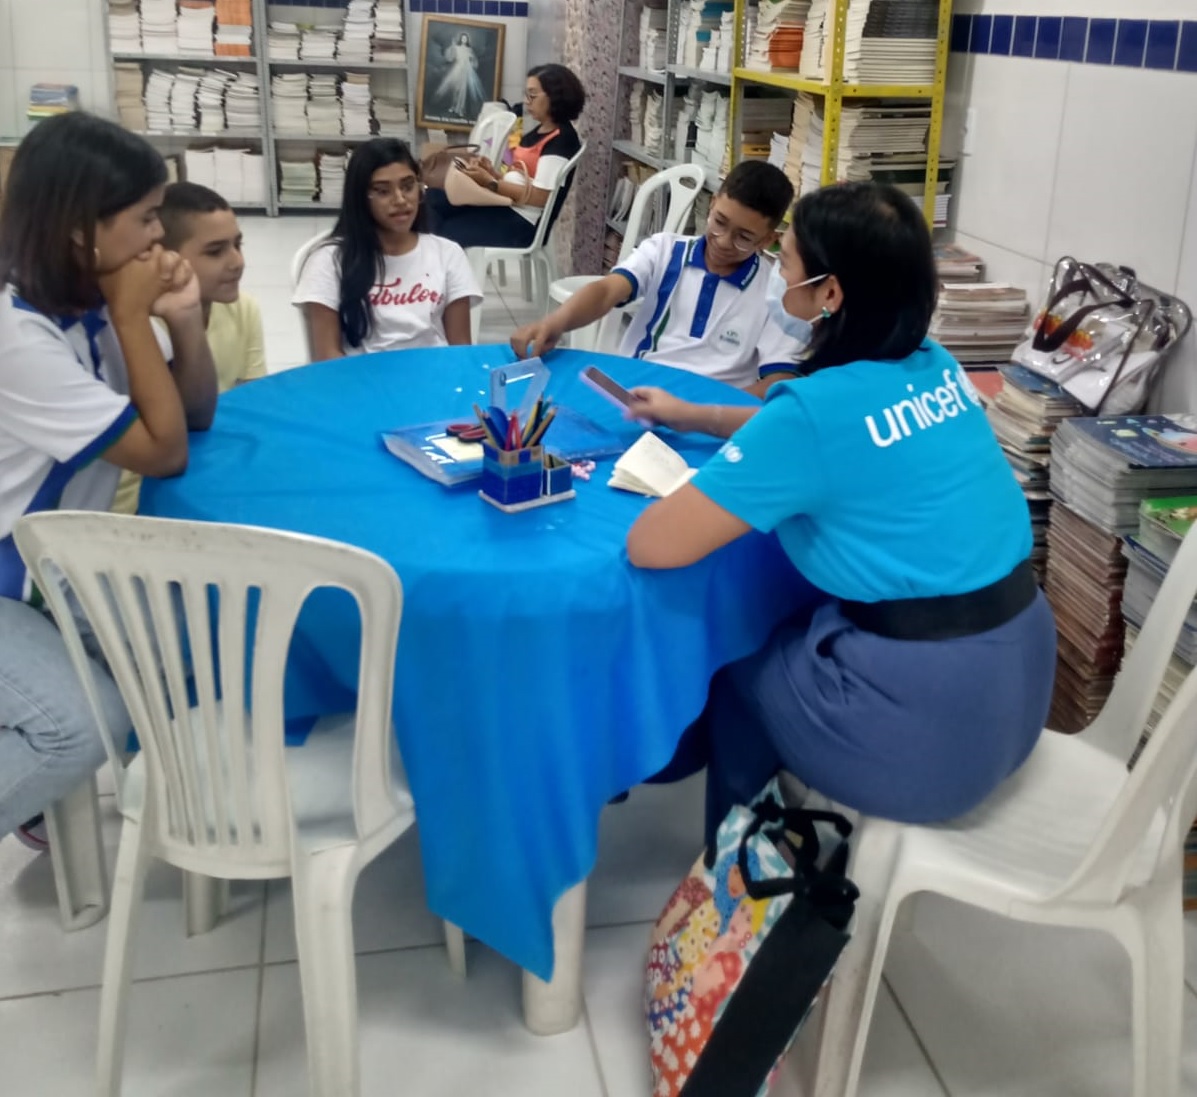 Representante do Selo Unicef conhece experiências exitosas desenvolvidas pela Educação de Eusébio